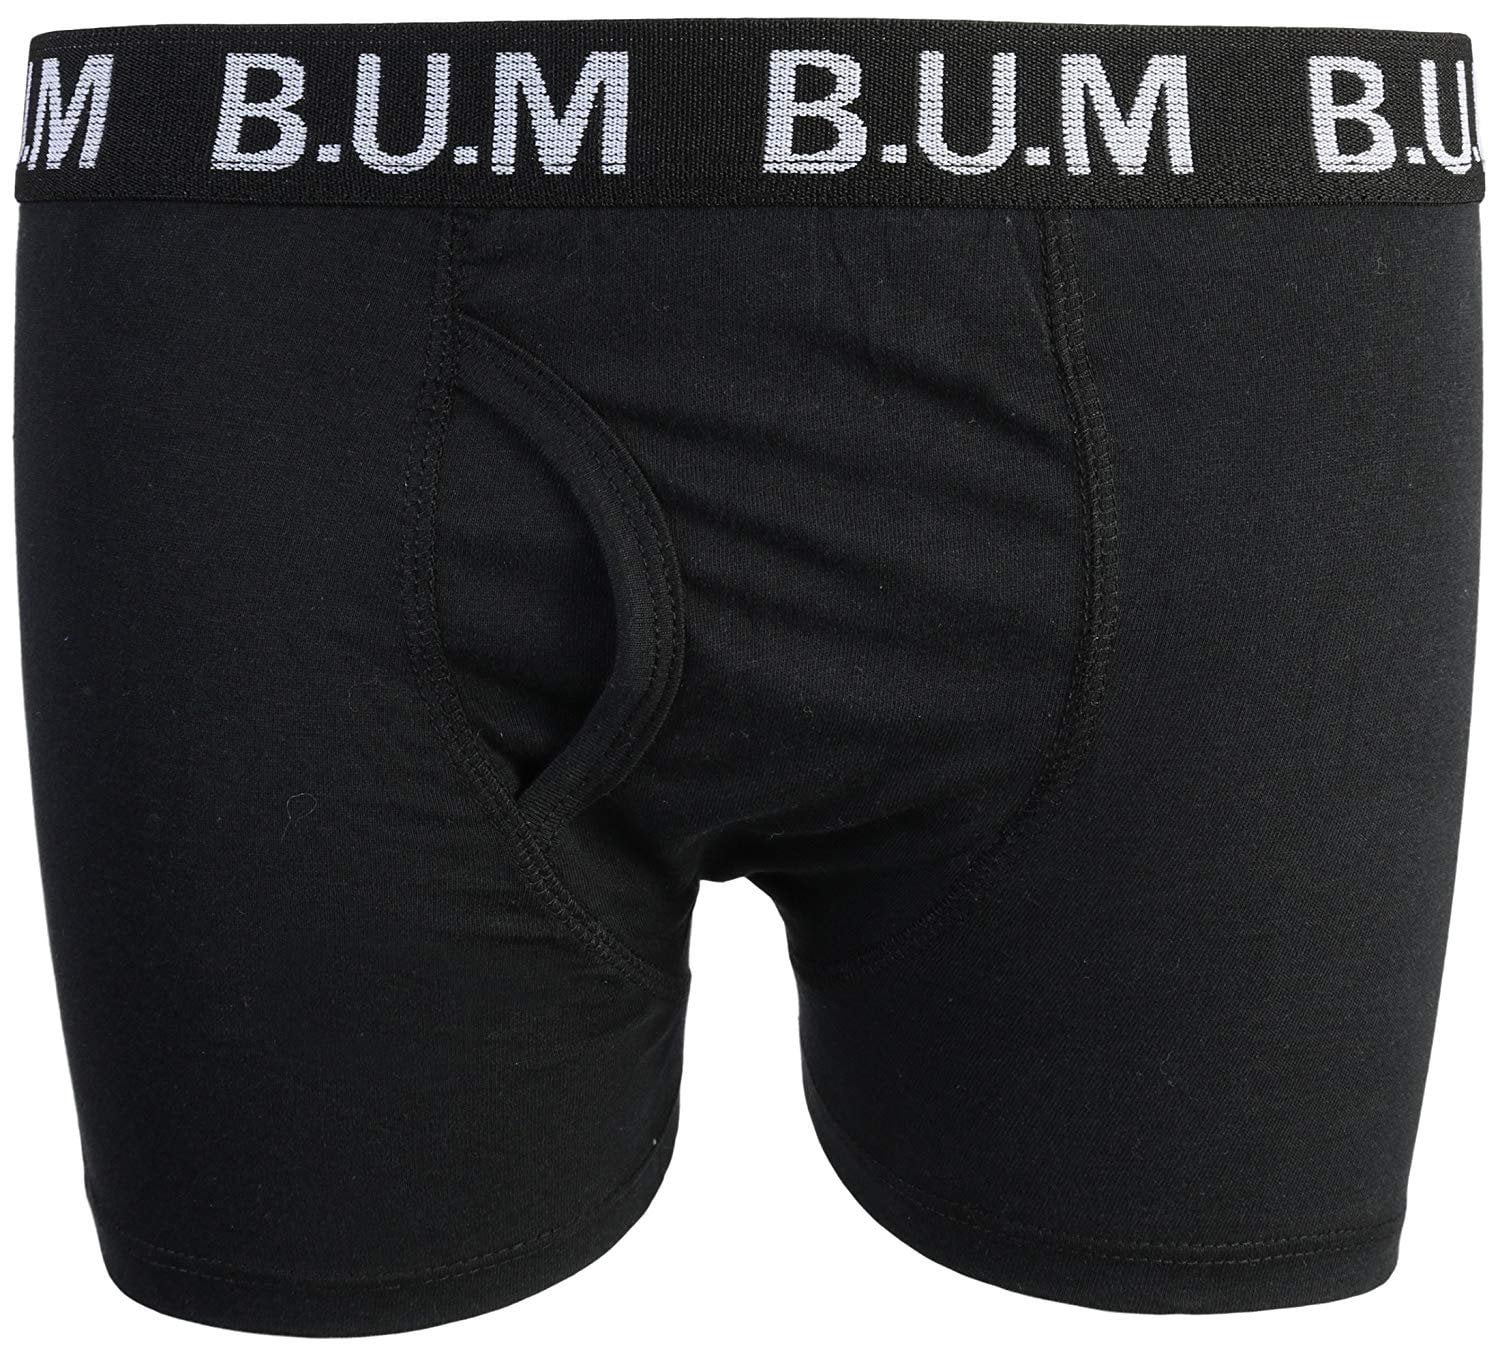 Equipment Boys 10 Pack Solid Boxer Briefs Underwear B.U.M